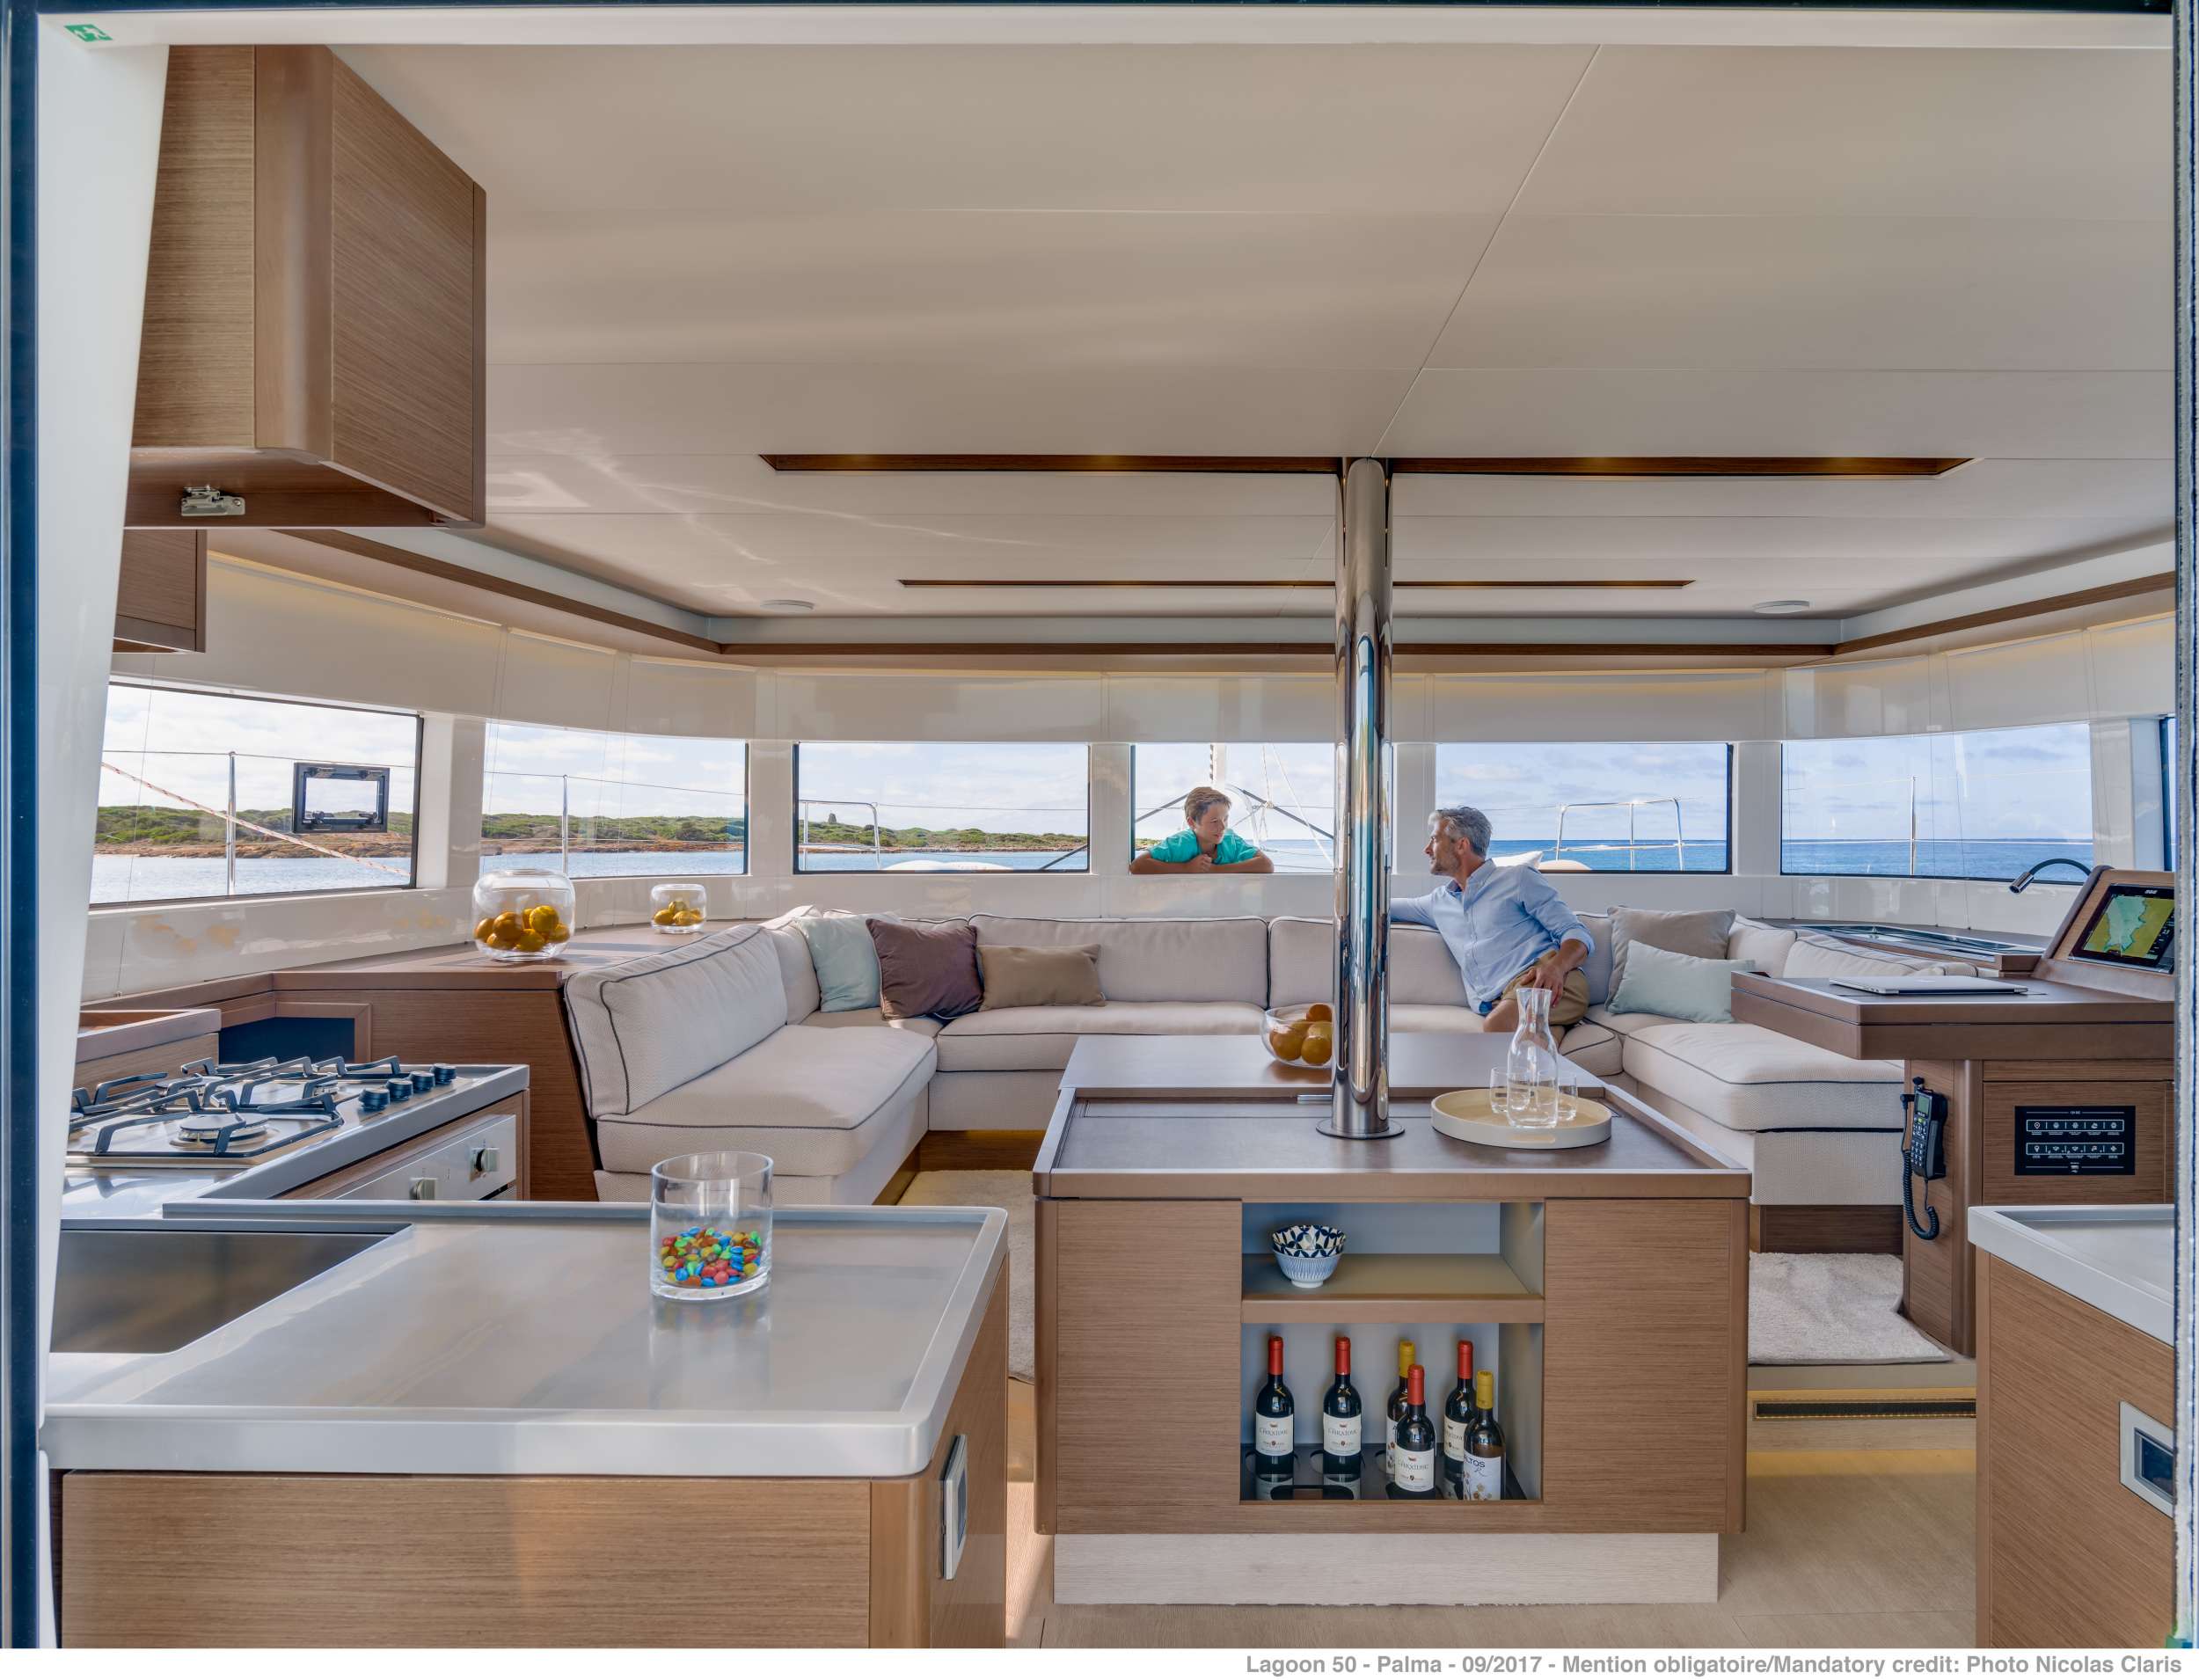 ONEIDA 2 - Luxury yacht charter worldwide & Boat hire in Greece 3